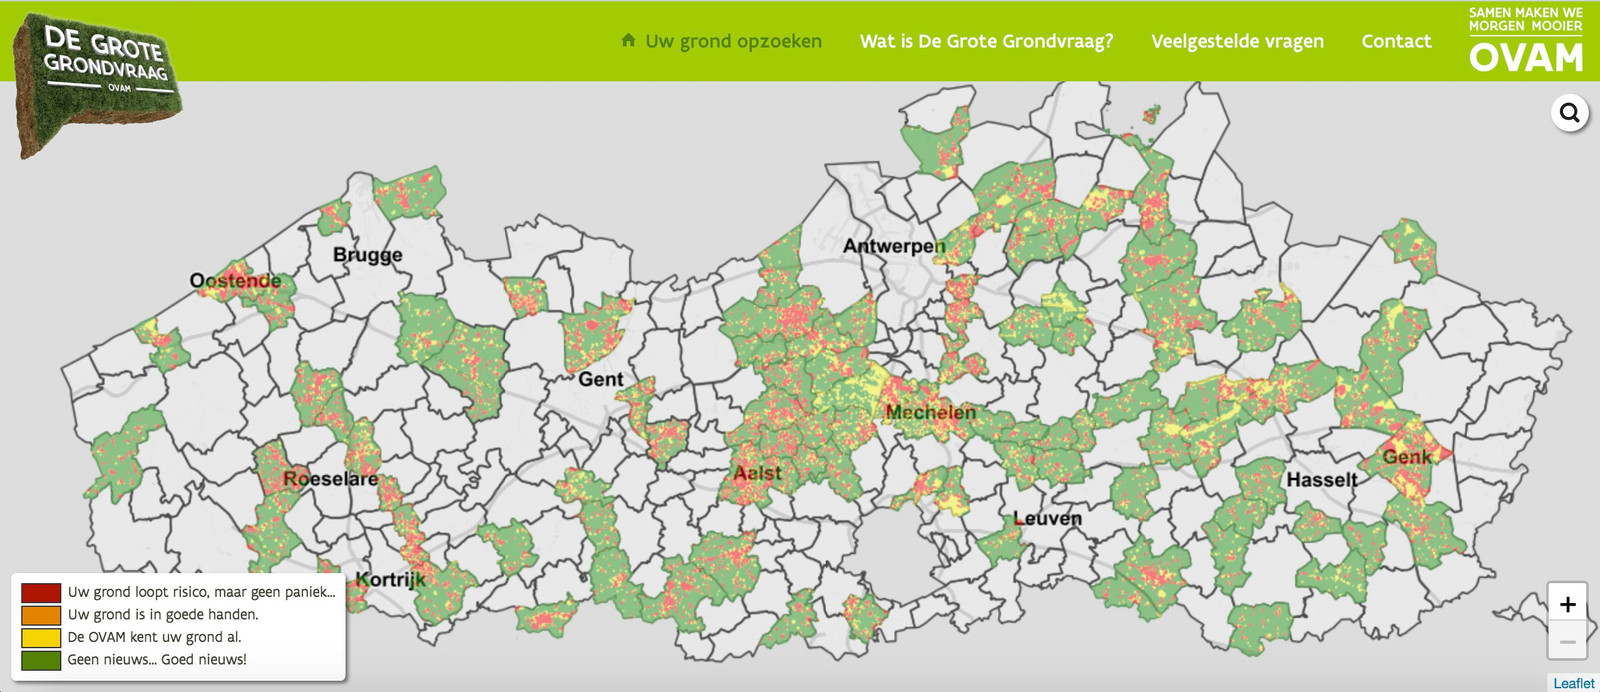 Knop vaardigheid barricade Vlaanderen wil van 10.000'en gronden kwaliteit onderzoeken. Wat betekent  het voor u? En wat kost het als uw grond vervuild blijkt? | Foto | hln.be